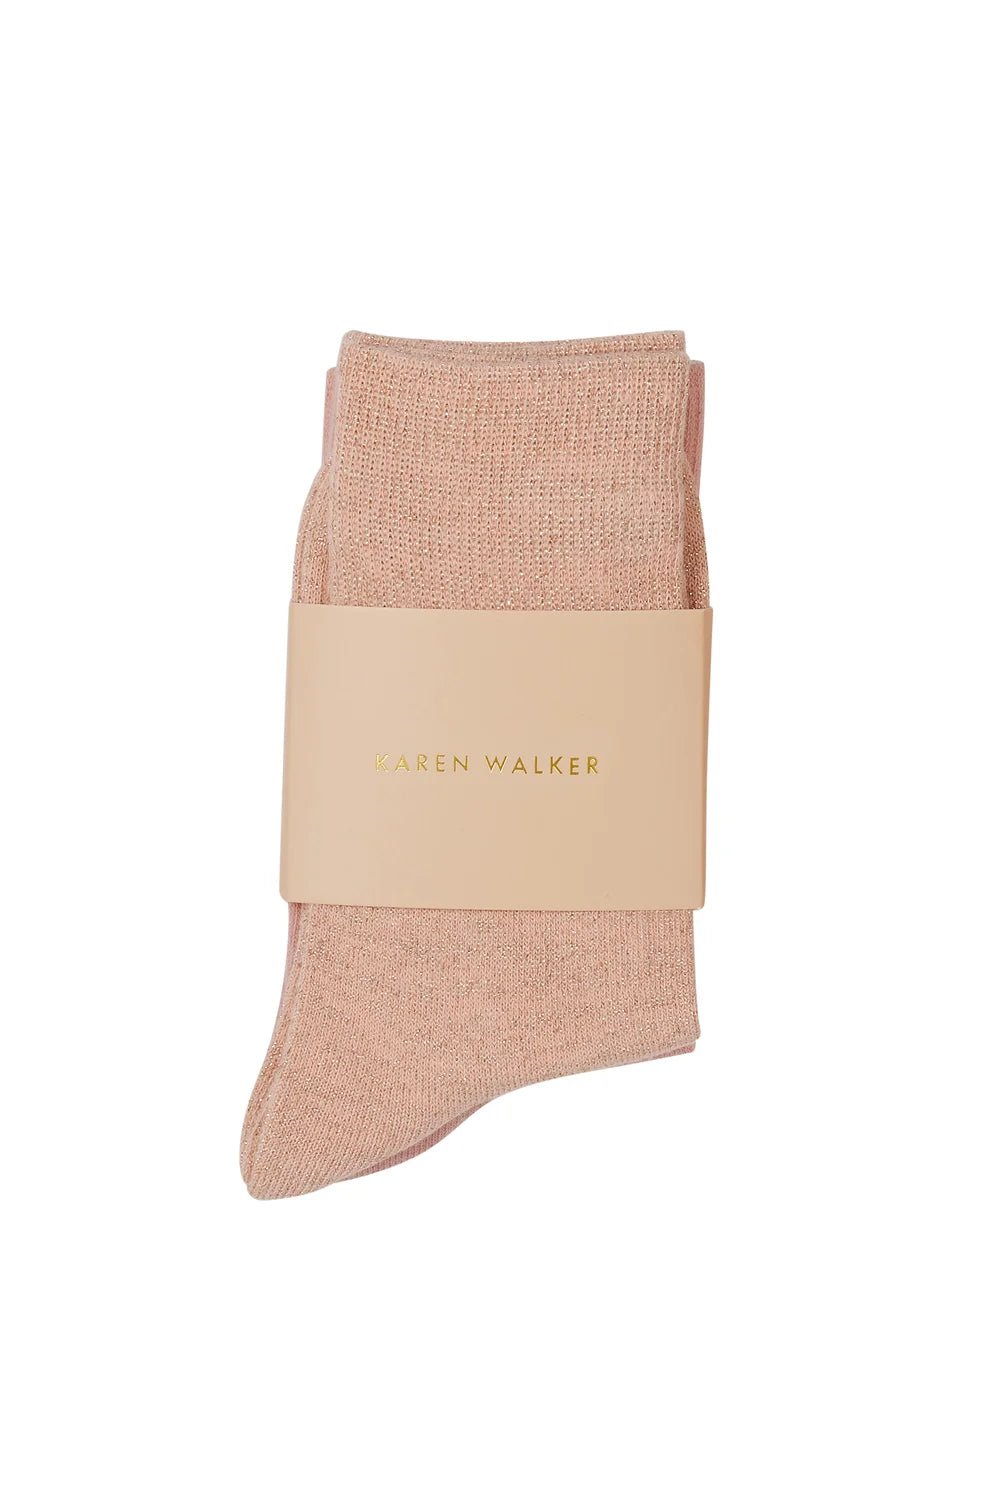 Karen Walker | Cotton Mix 2 Pack Socks | Pink/Glitter | Palm Boutique